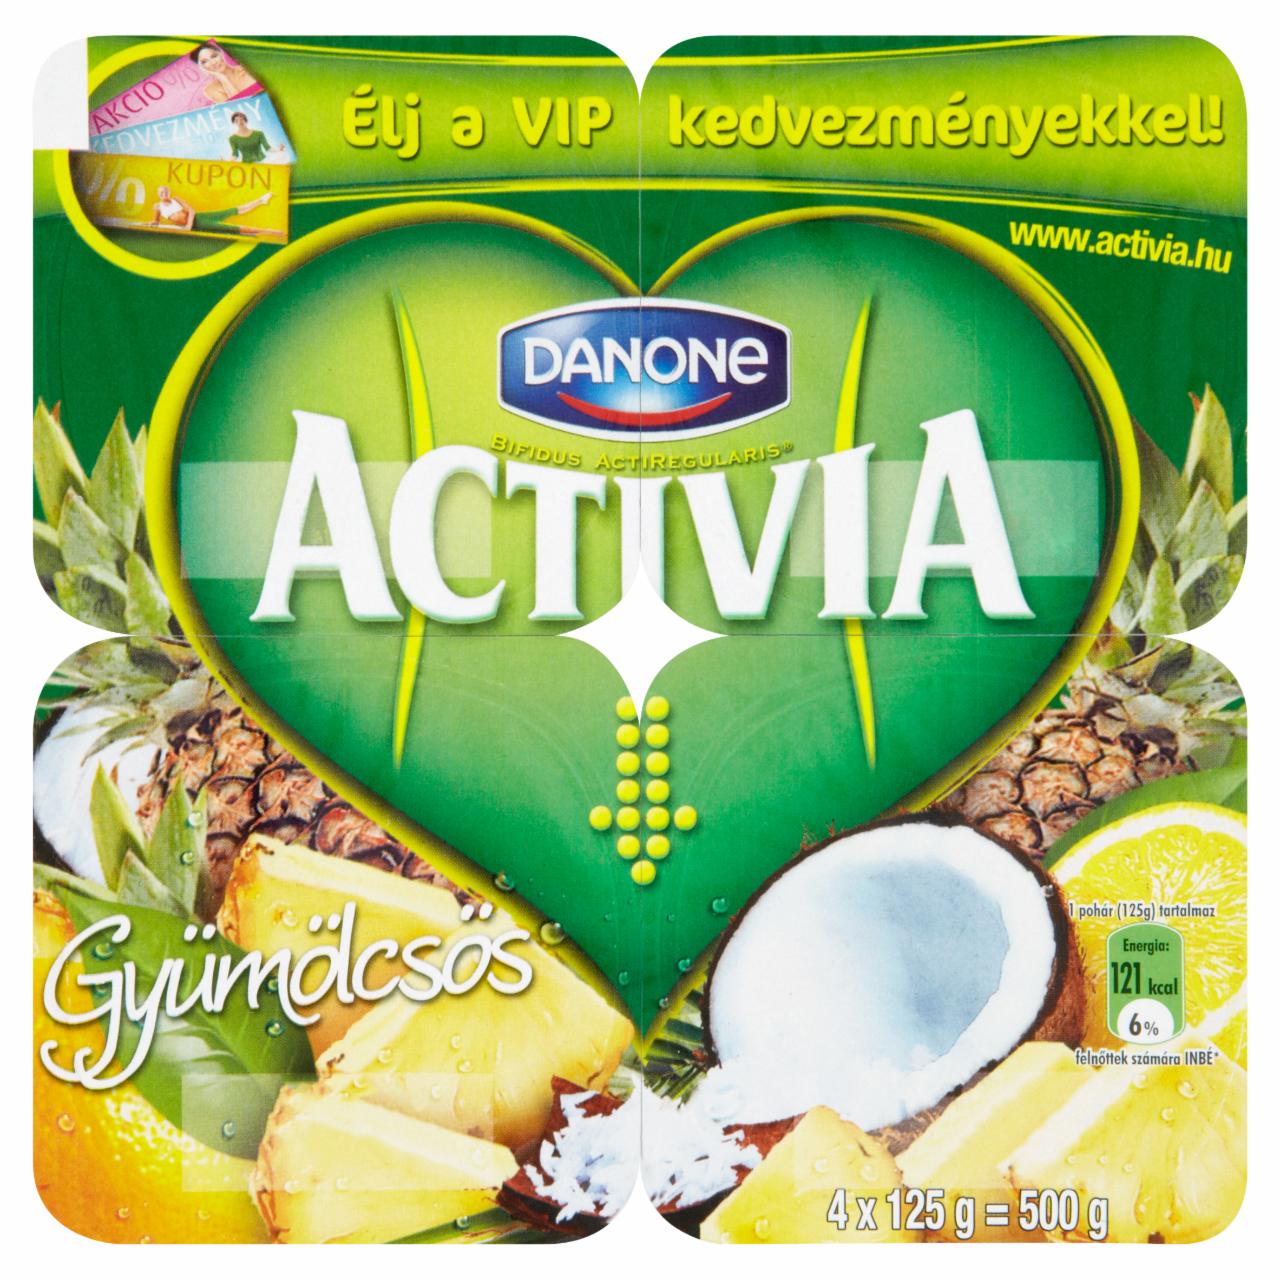 Képek - Danone Activia élőflórás, trópusi gyümölcsös joghurt 4 x 125 g